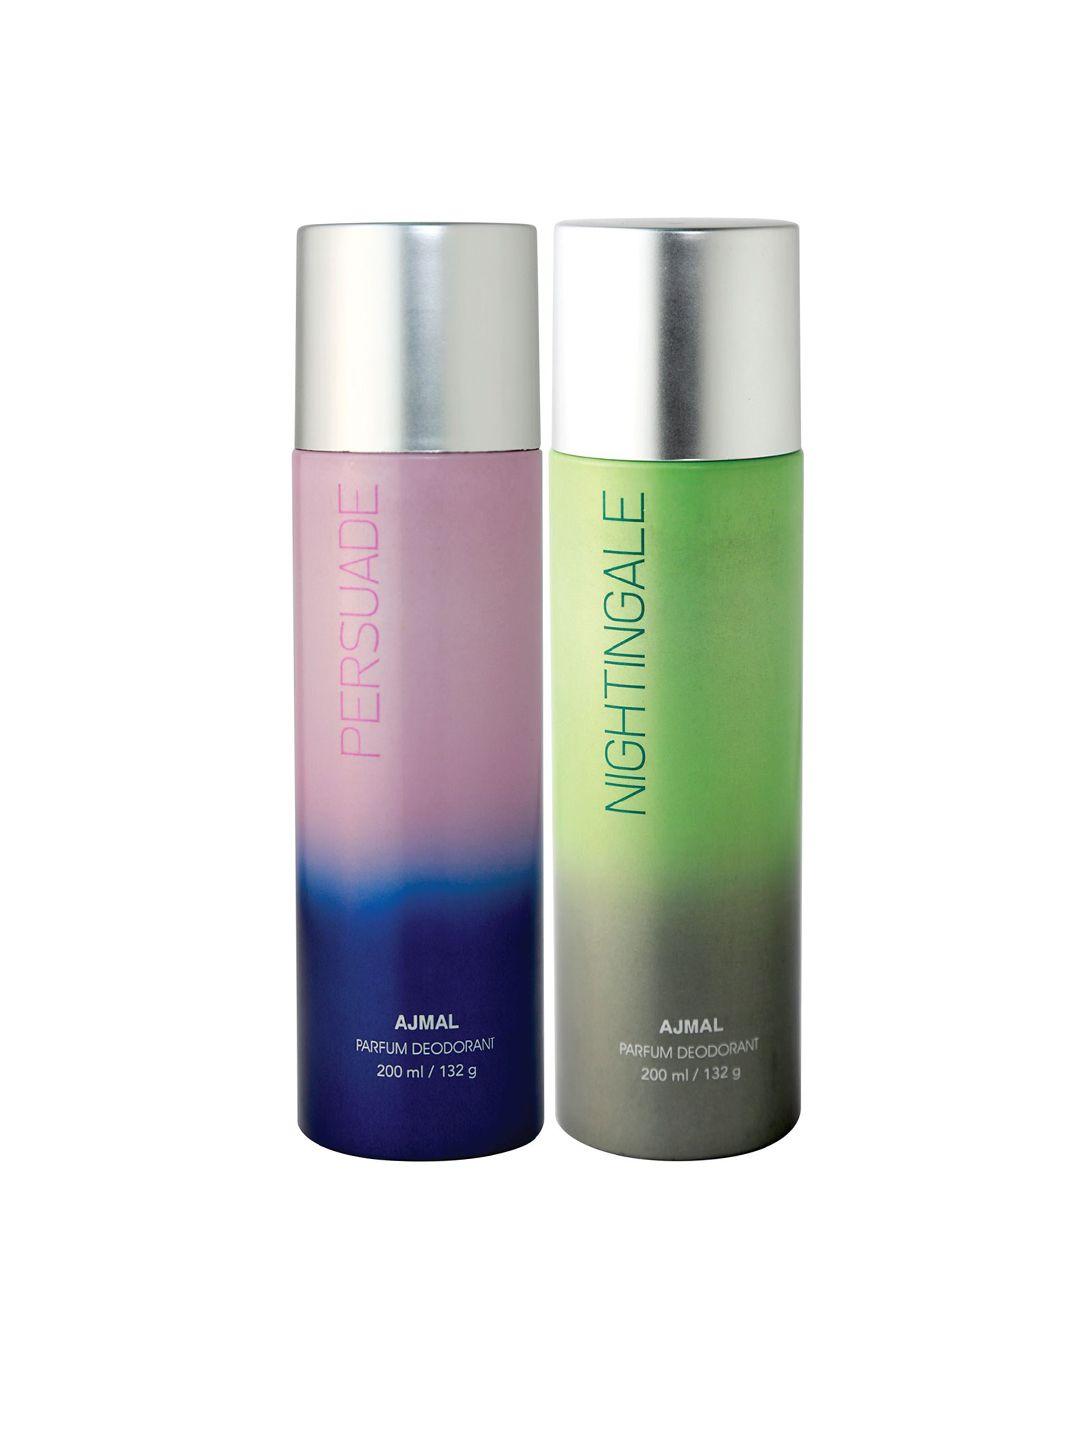 ajmal unisex set of persuade & nightingale deodorants - 200 ml each